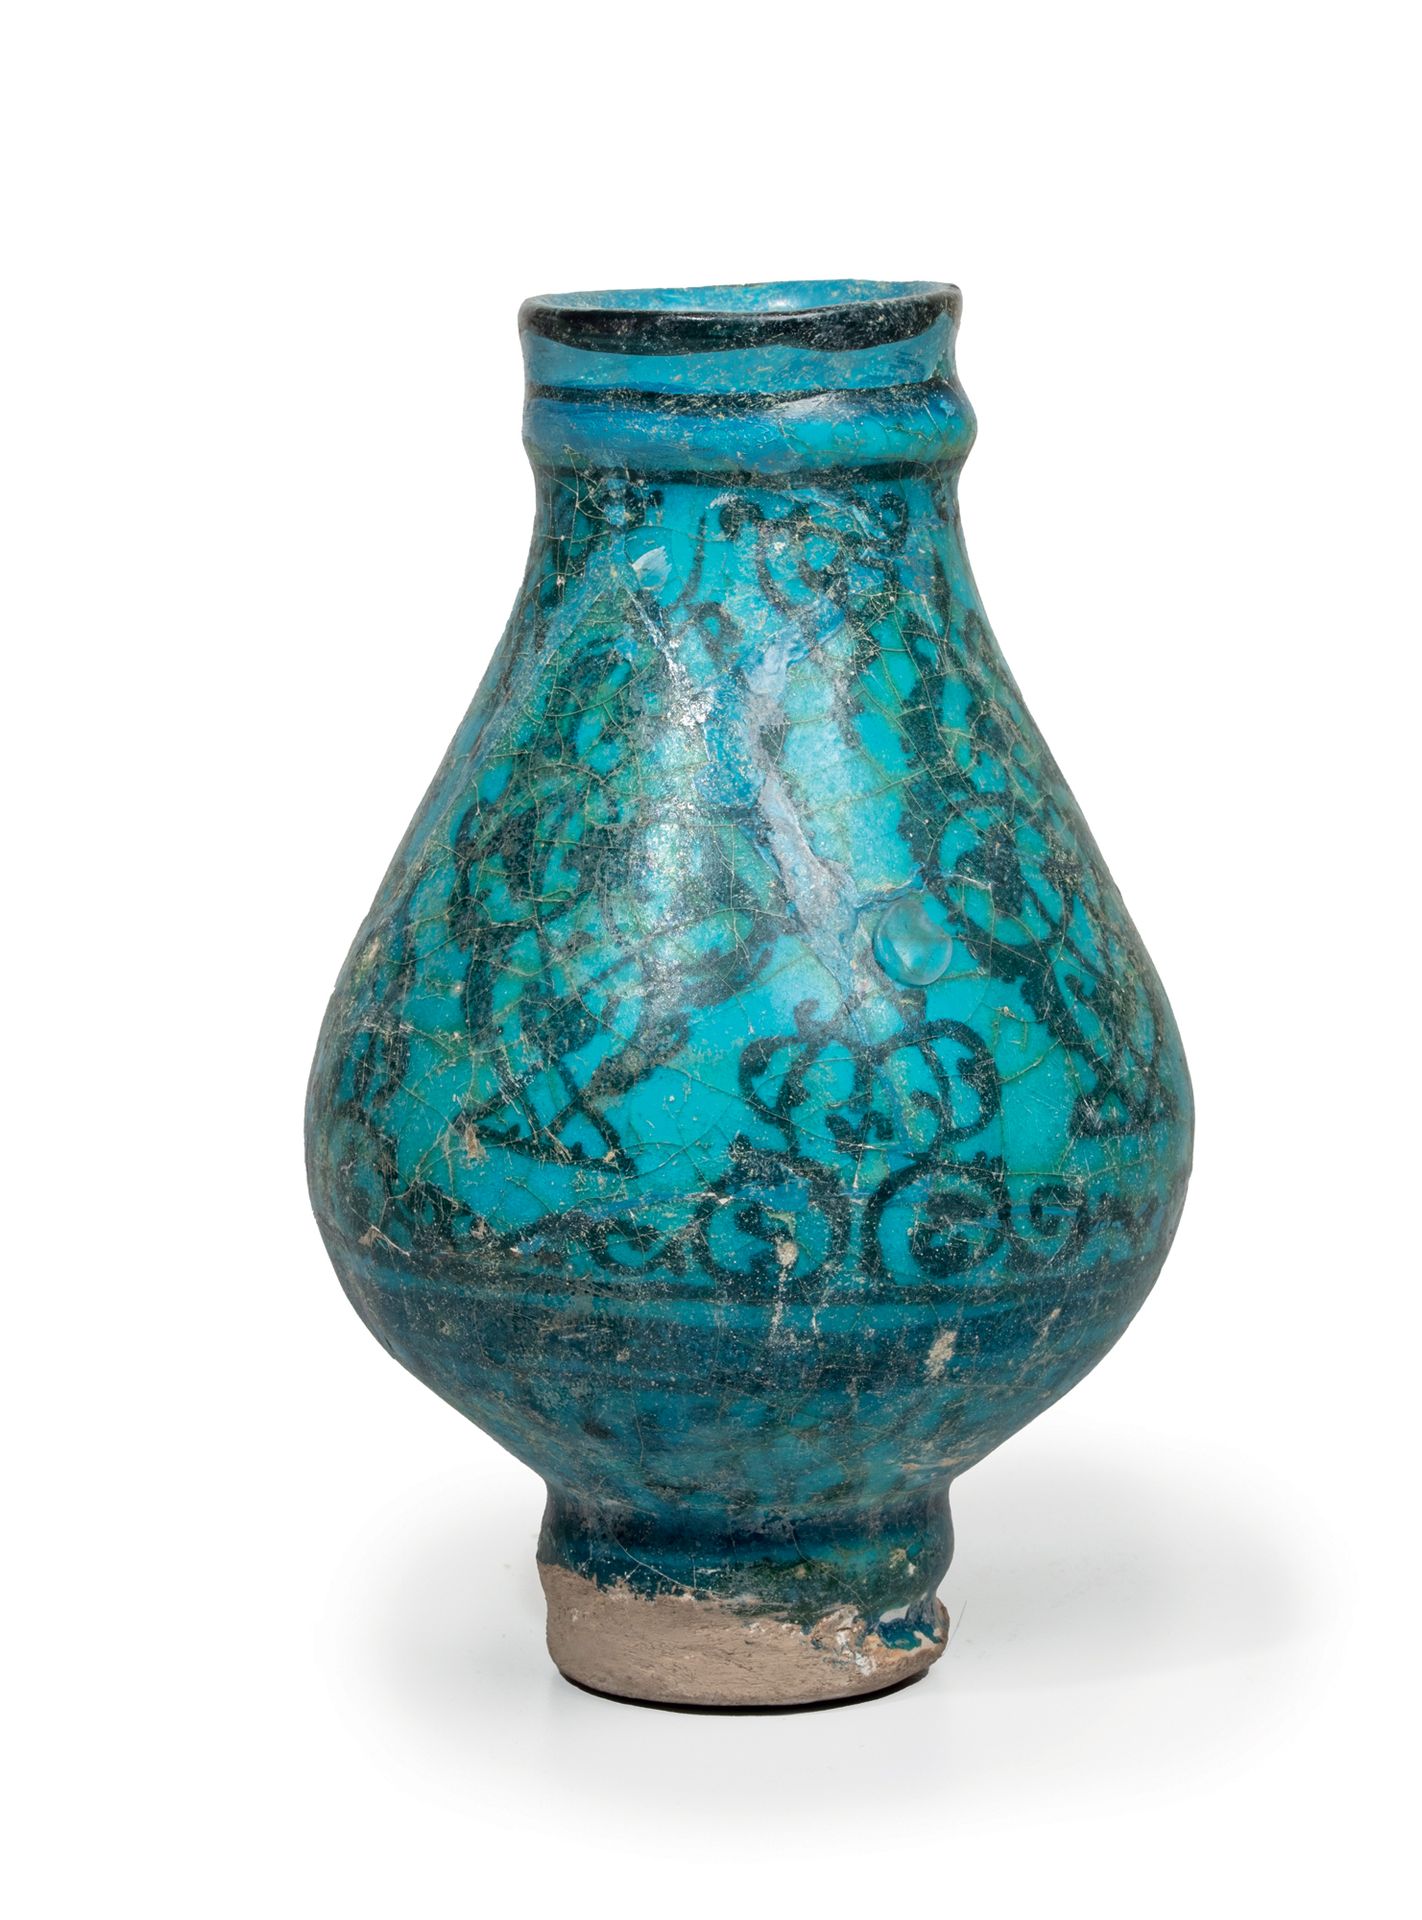 Null 波斯小花瓶
在透明的绿松石釉下有黑色彩绘装饰的硅质糊状物 伊朗，可能是卡尚，13世纪 高度：15厘米
有绿松石釉的陶瓷，装饰有黑色彩绘的曼陀罗，底部有&hellip;